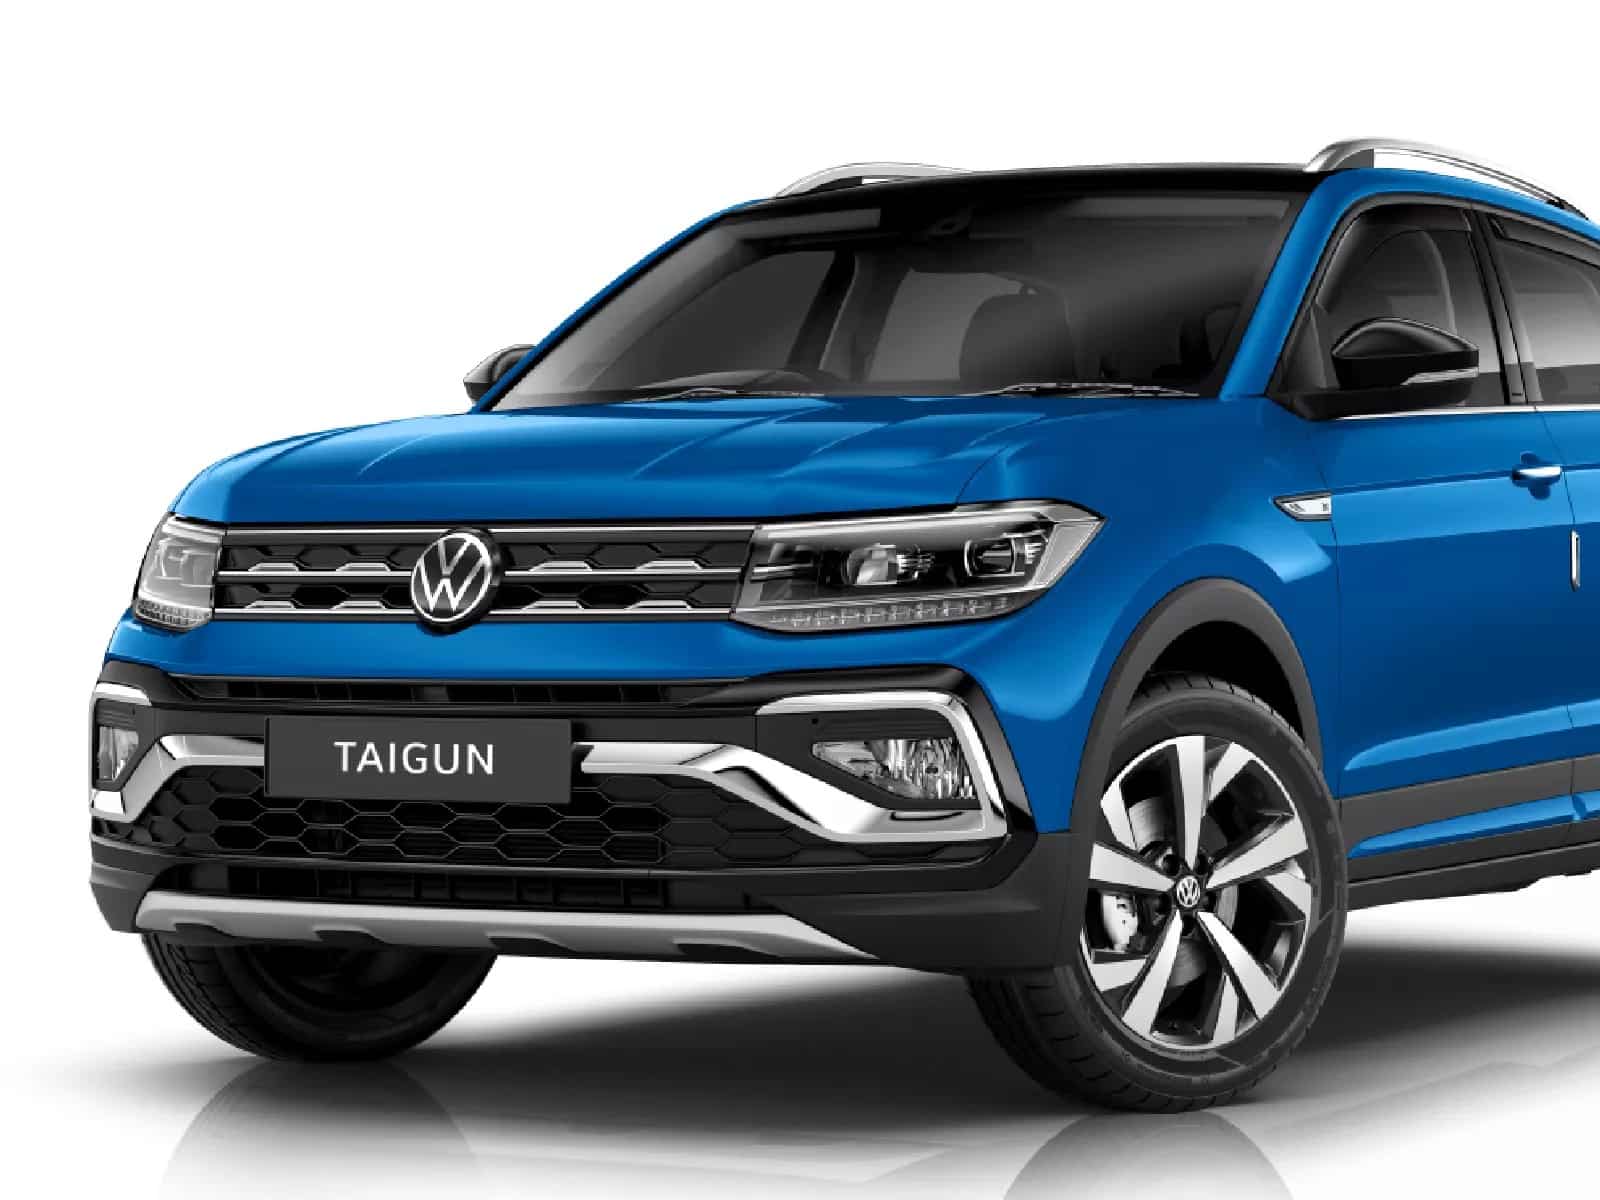 Volkswagen Taigun SUV Special Edition: Price